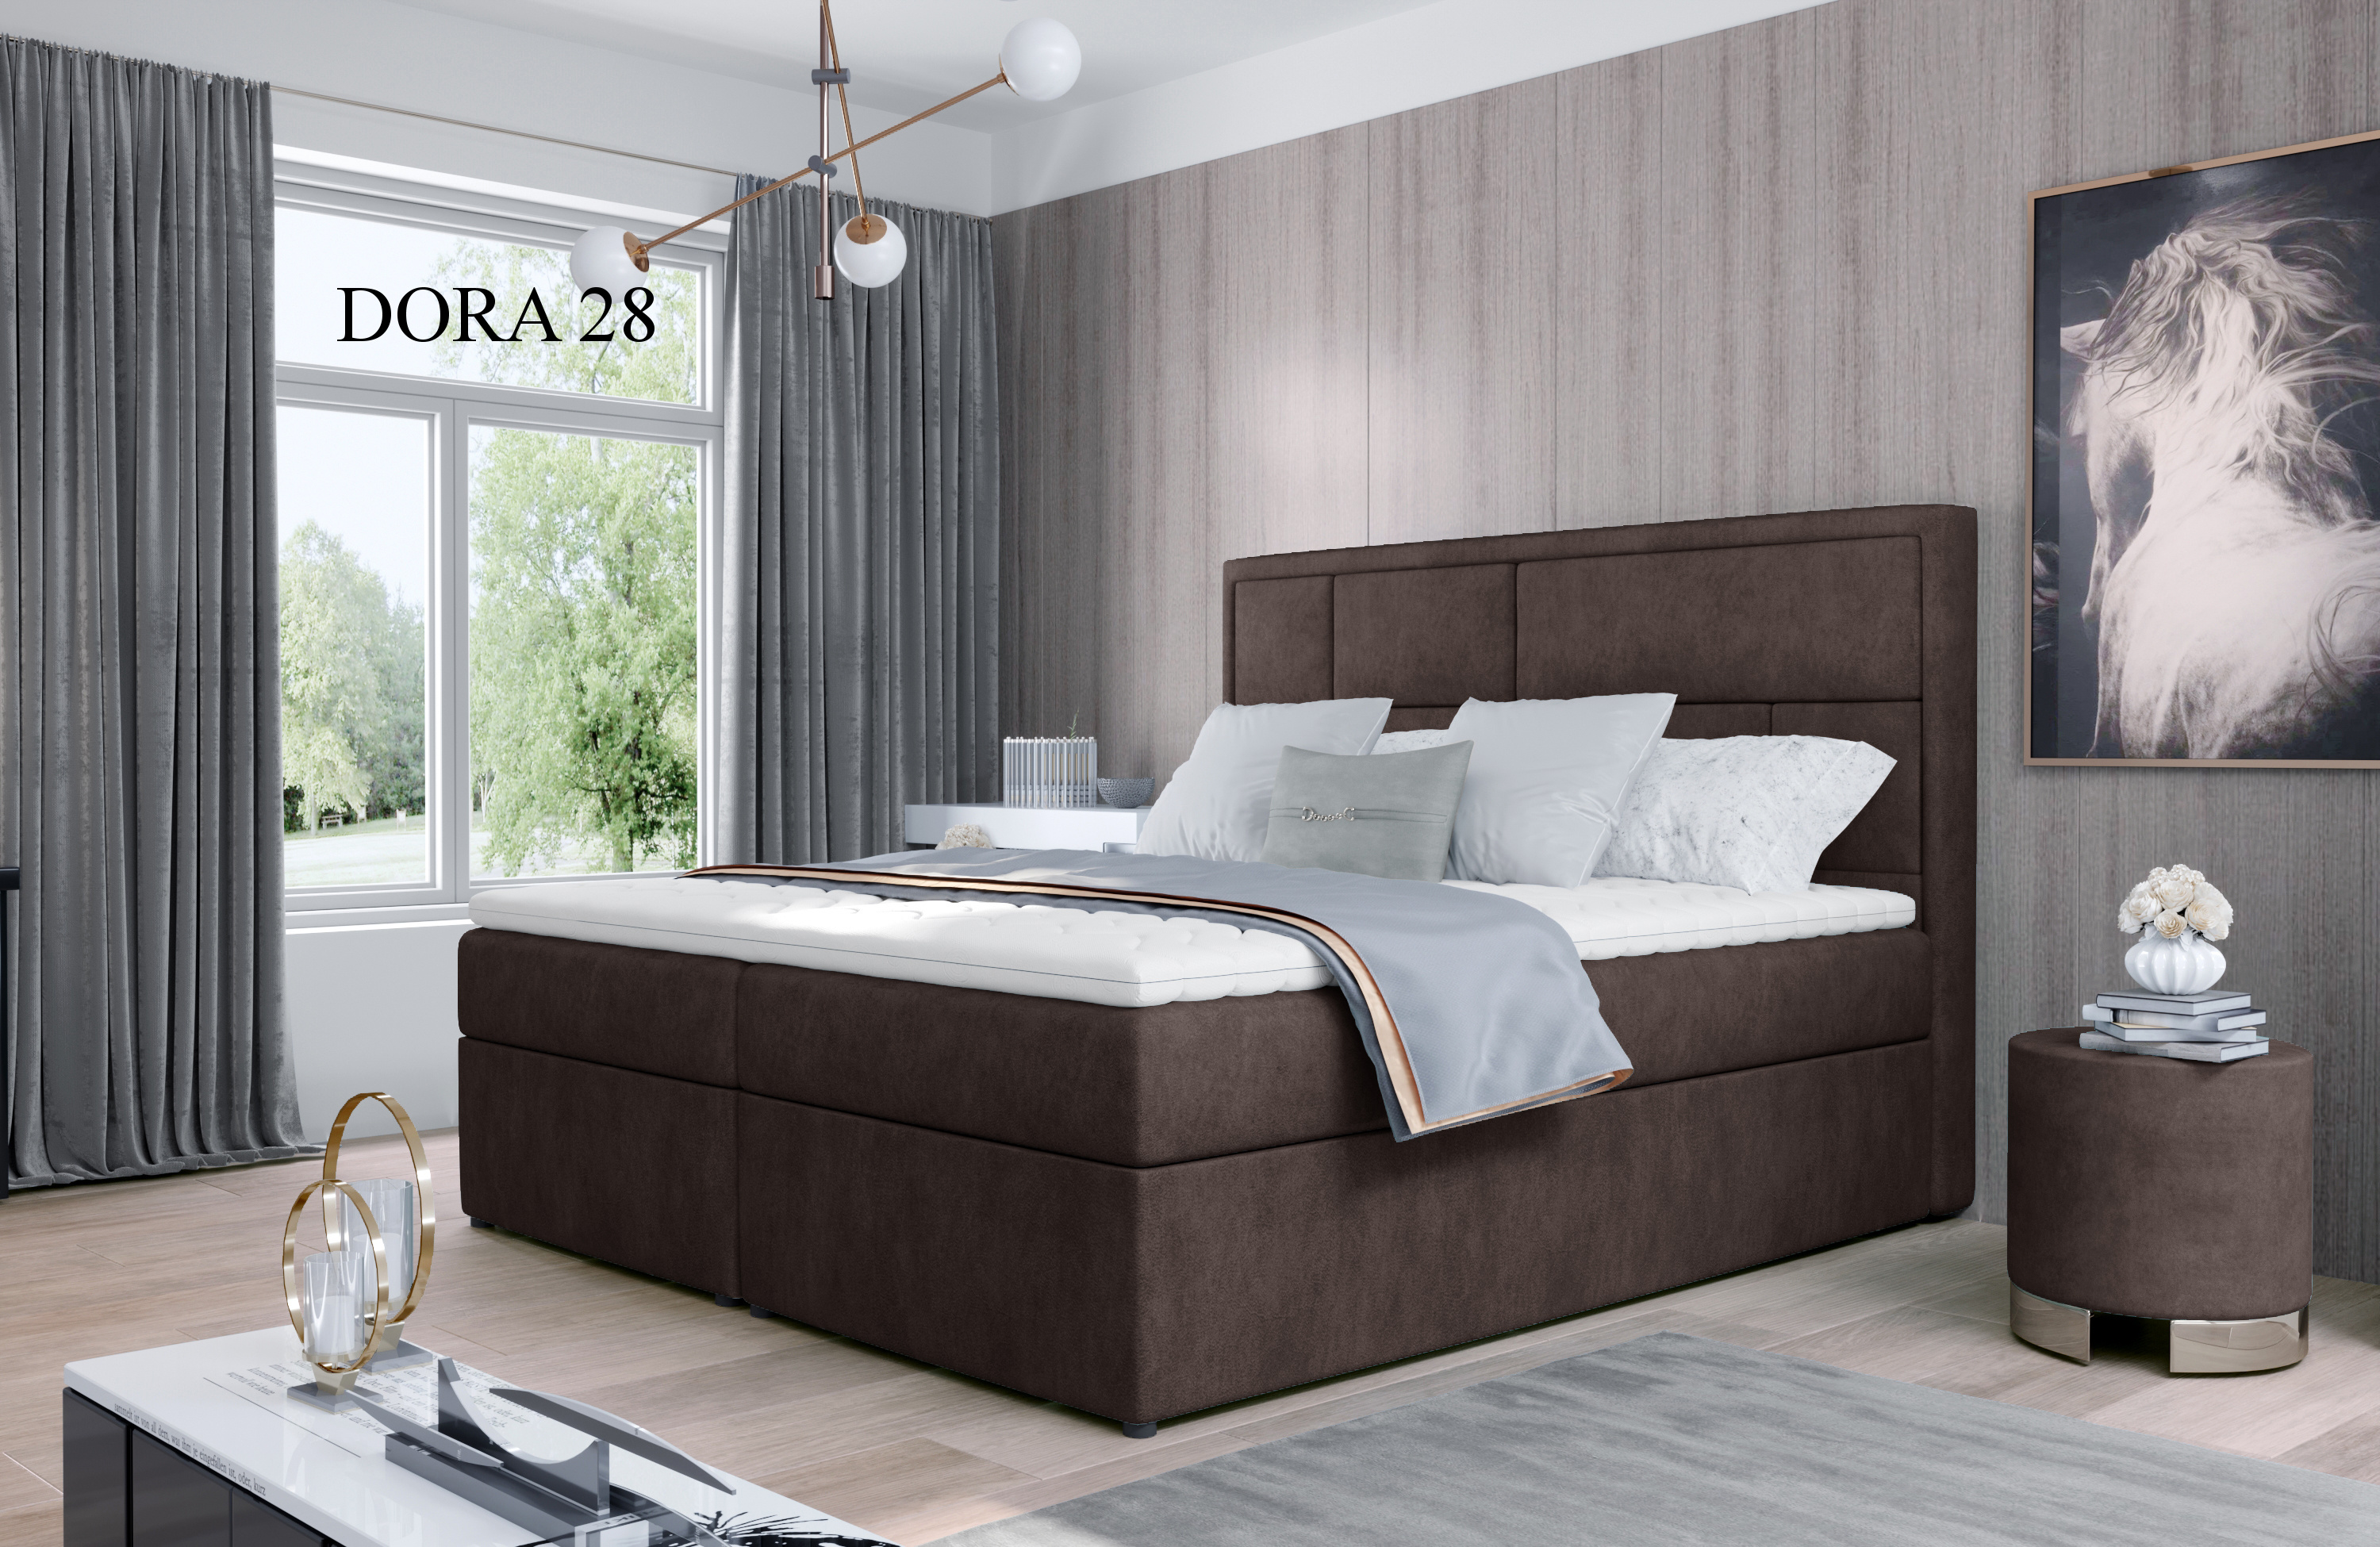 Čalouněná postel MERON Boxsprings 140 x 200 cm Dora 28